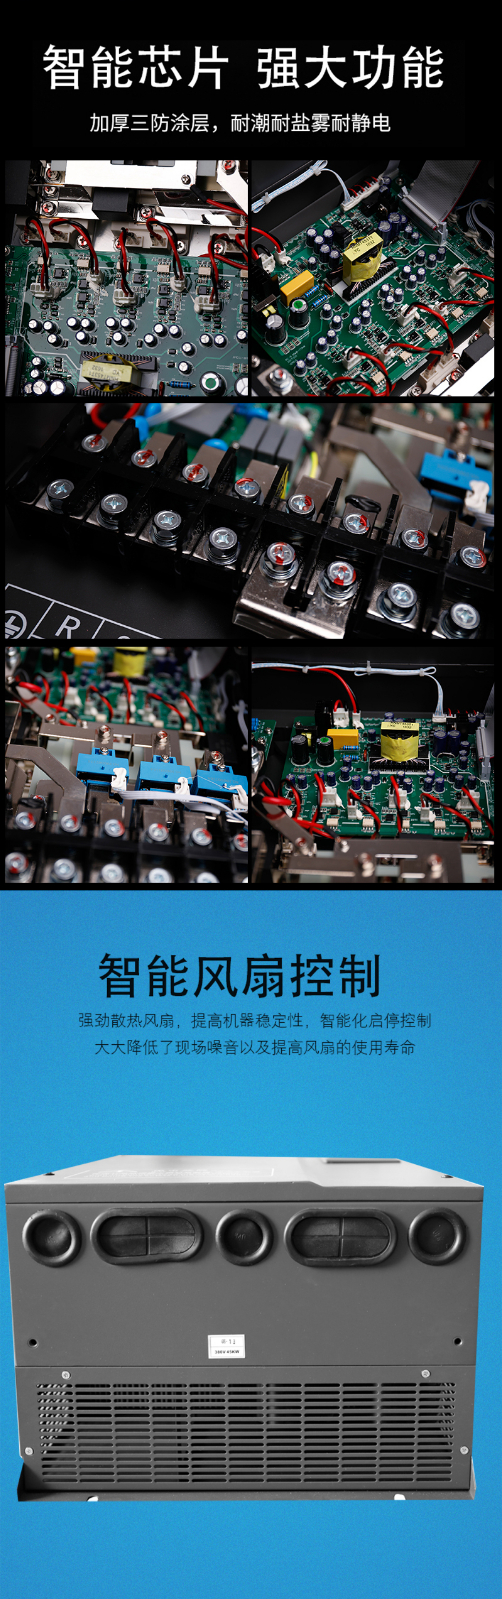 上海台芯电气